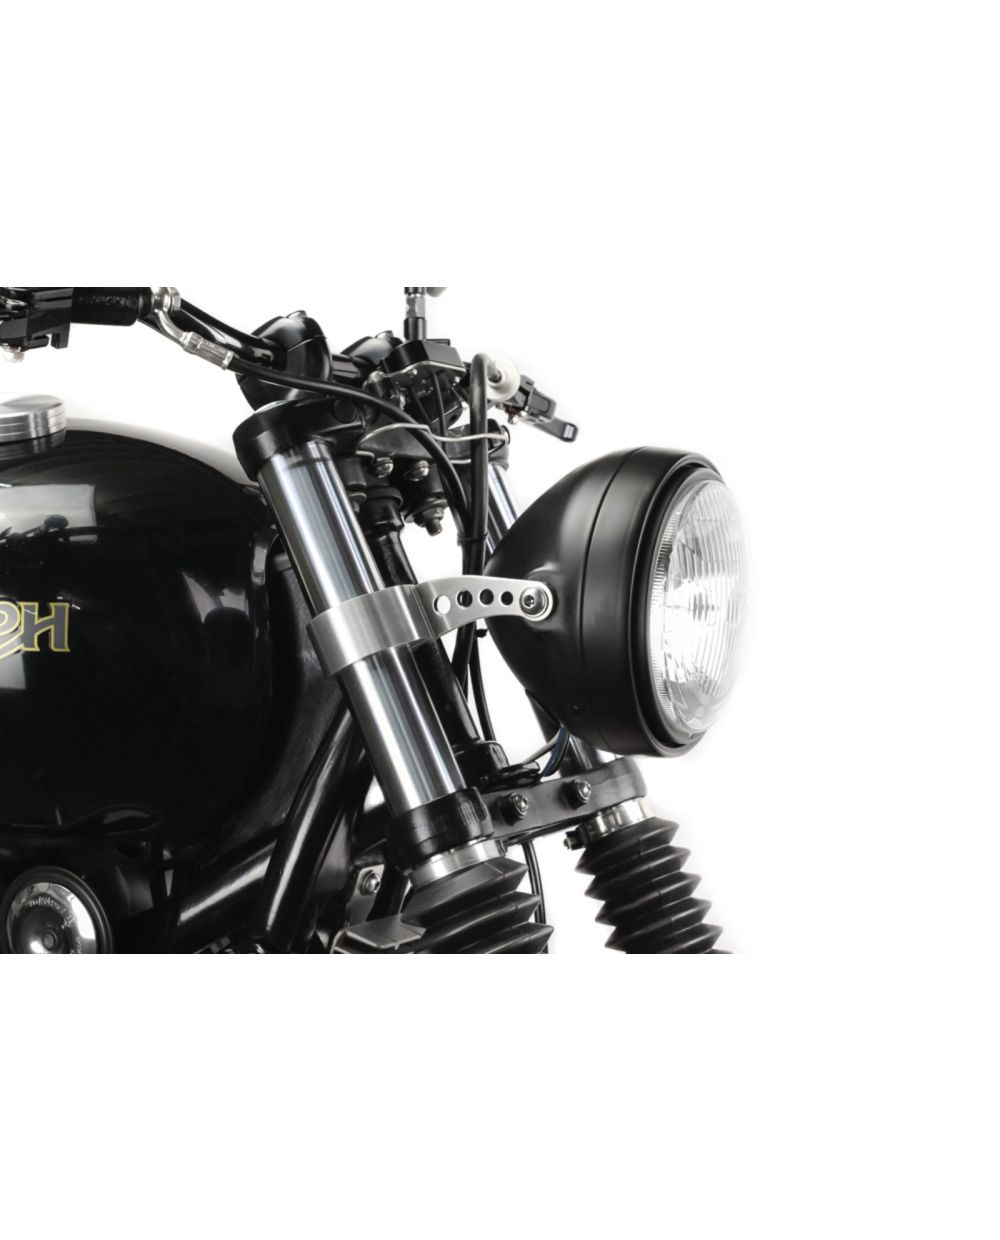 Motorize - Motorrad Scheinwerfer 20cm - M8 Befestigung seitlich :  : Auto & Motorrad